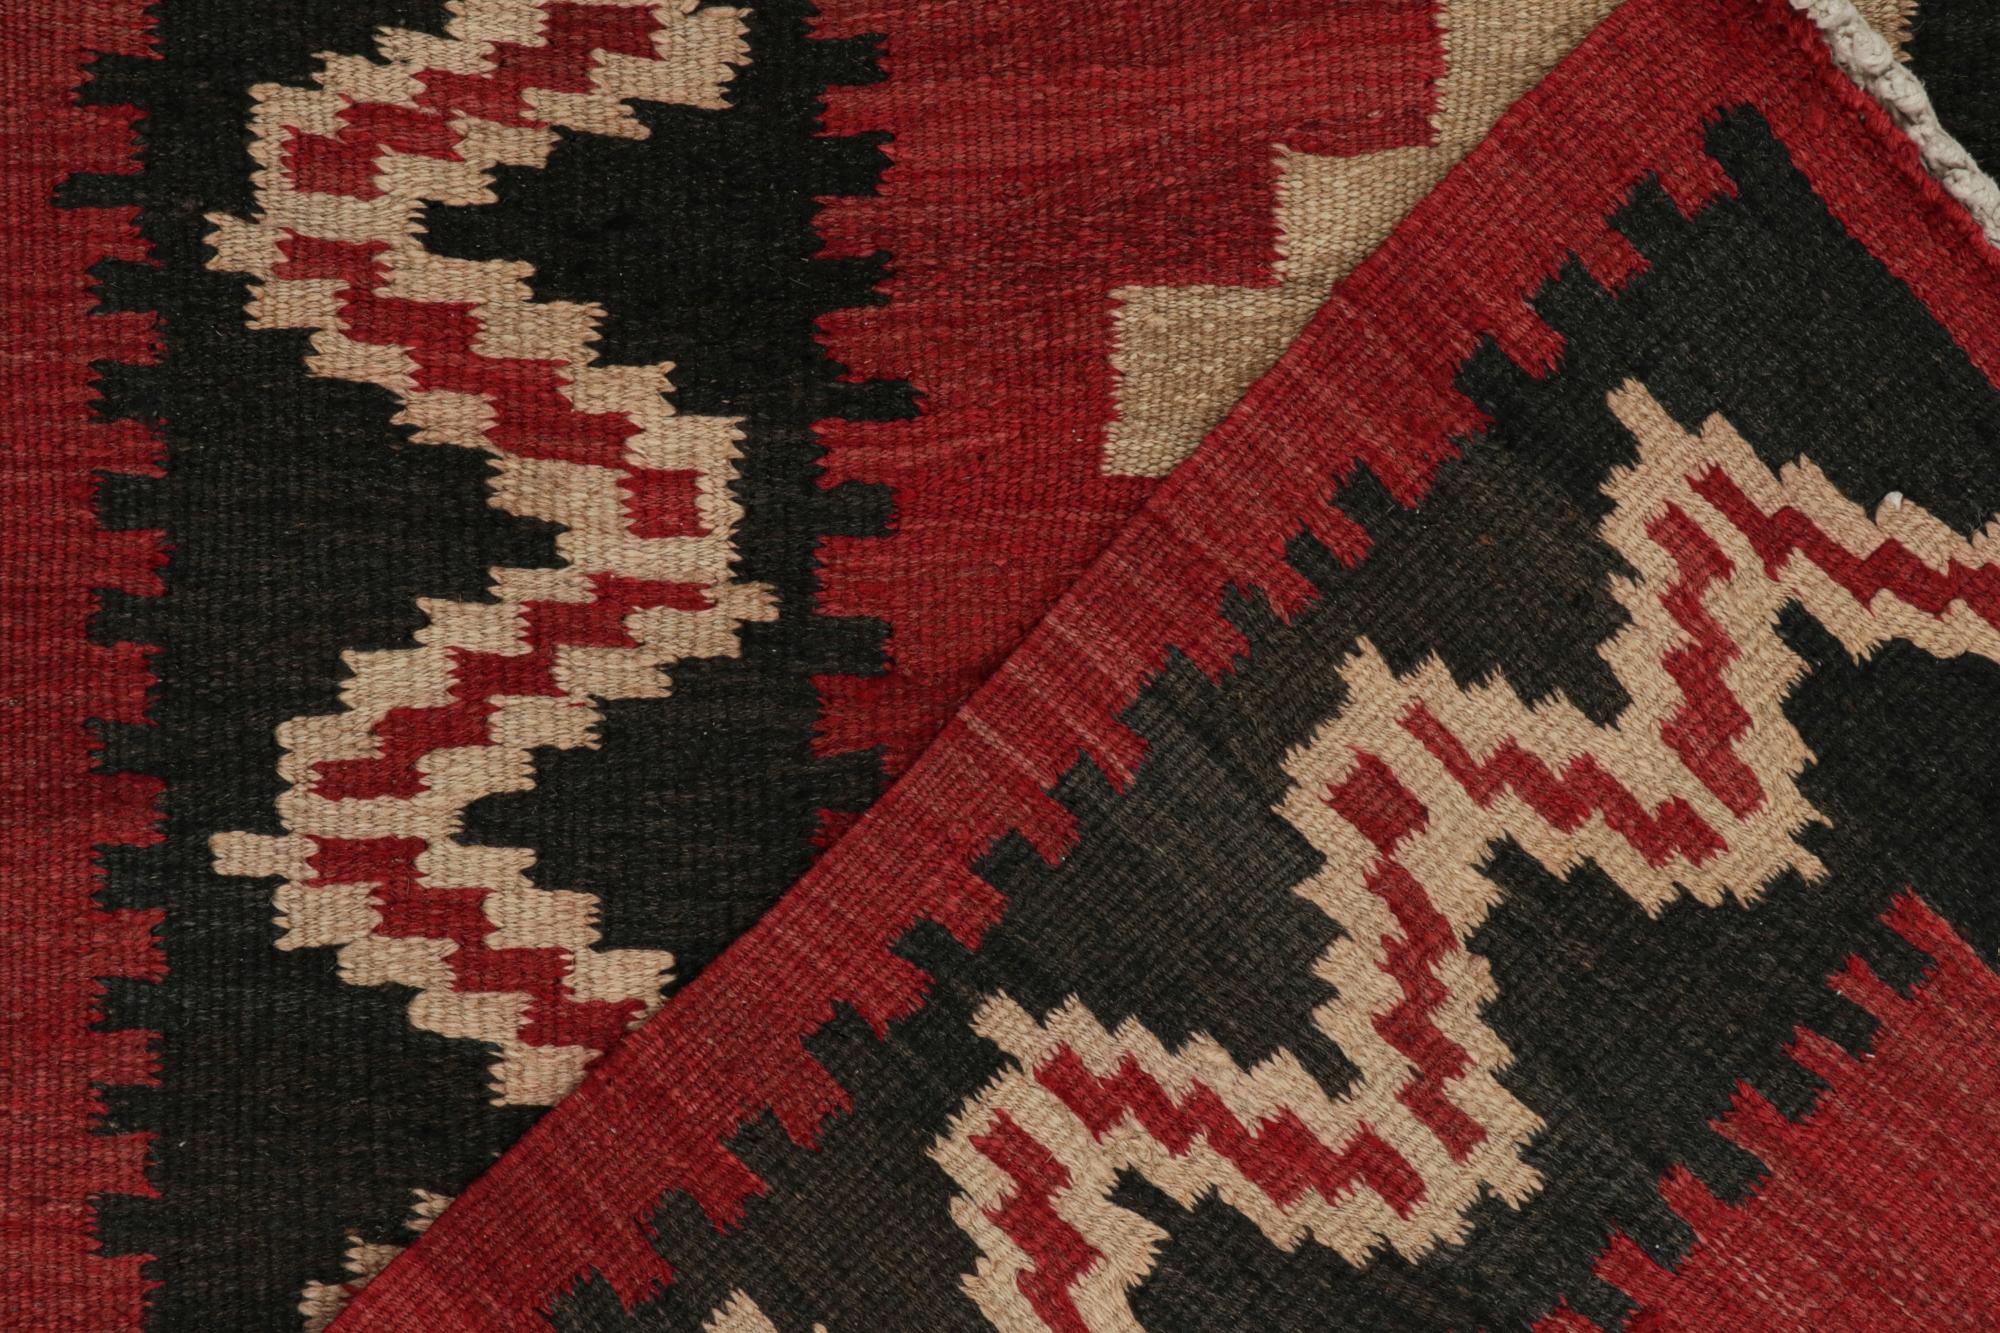 Wool Vintage Shahsavan Persian Kilim in Red, Beige & Black Patterns by Rug & Kilim For Sale